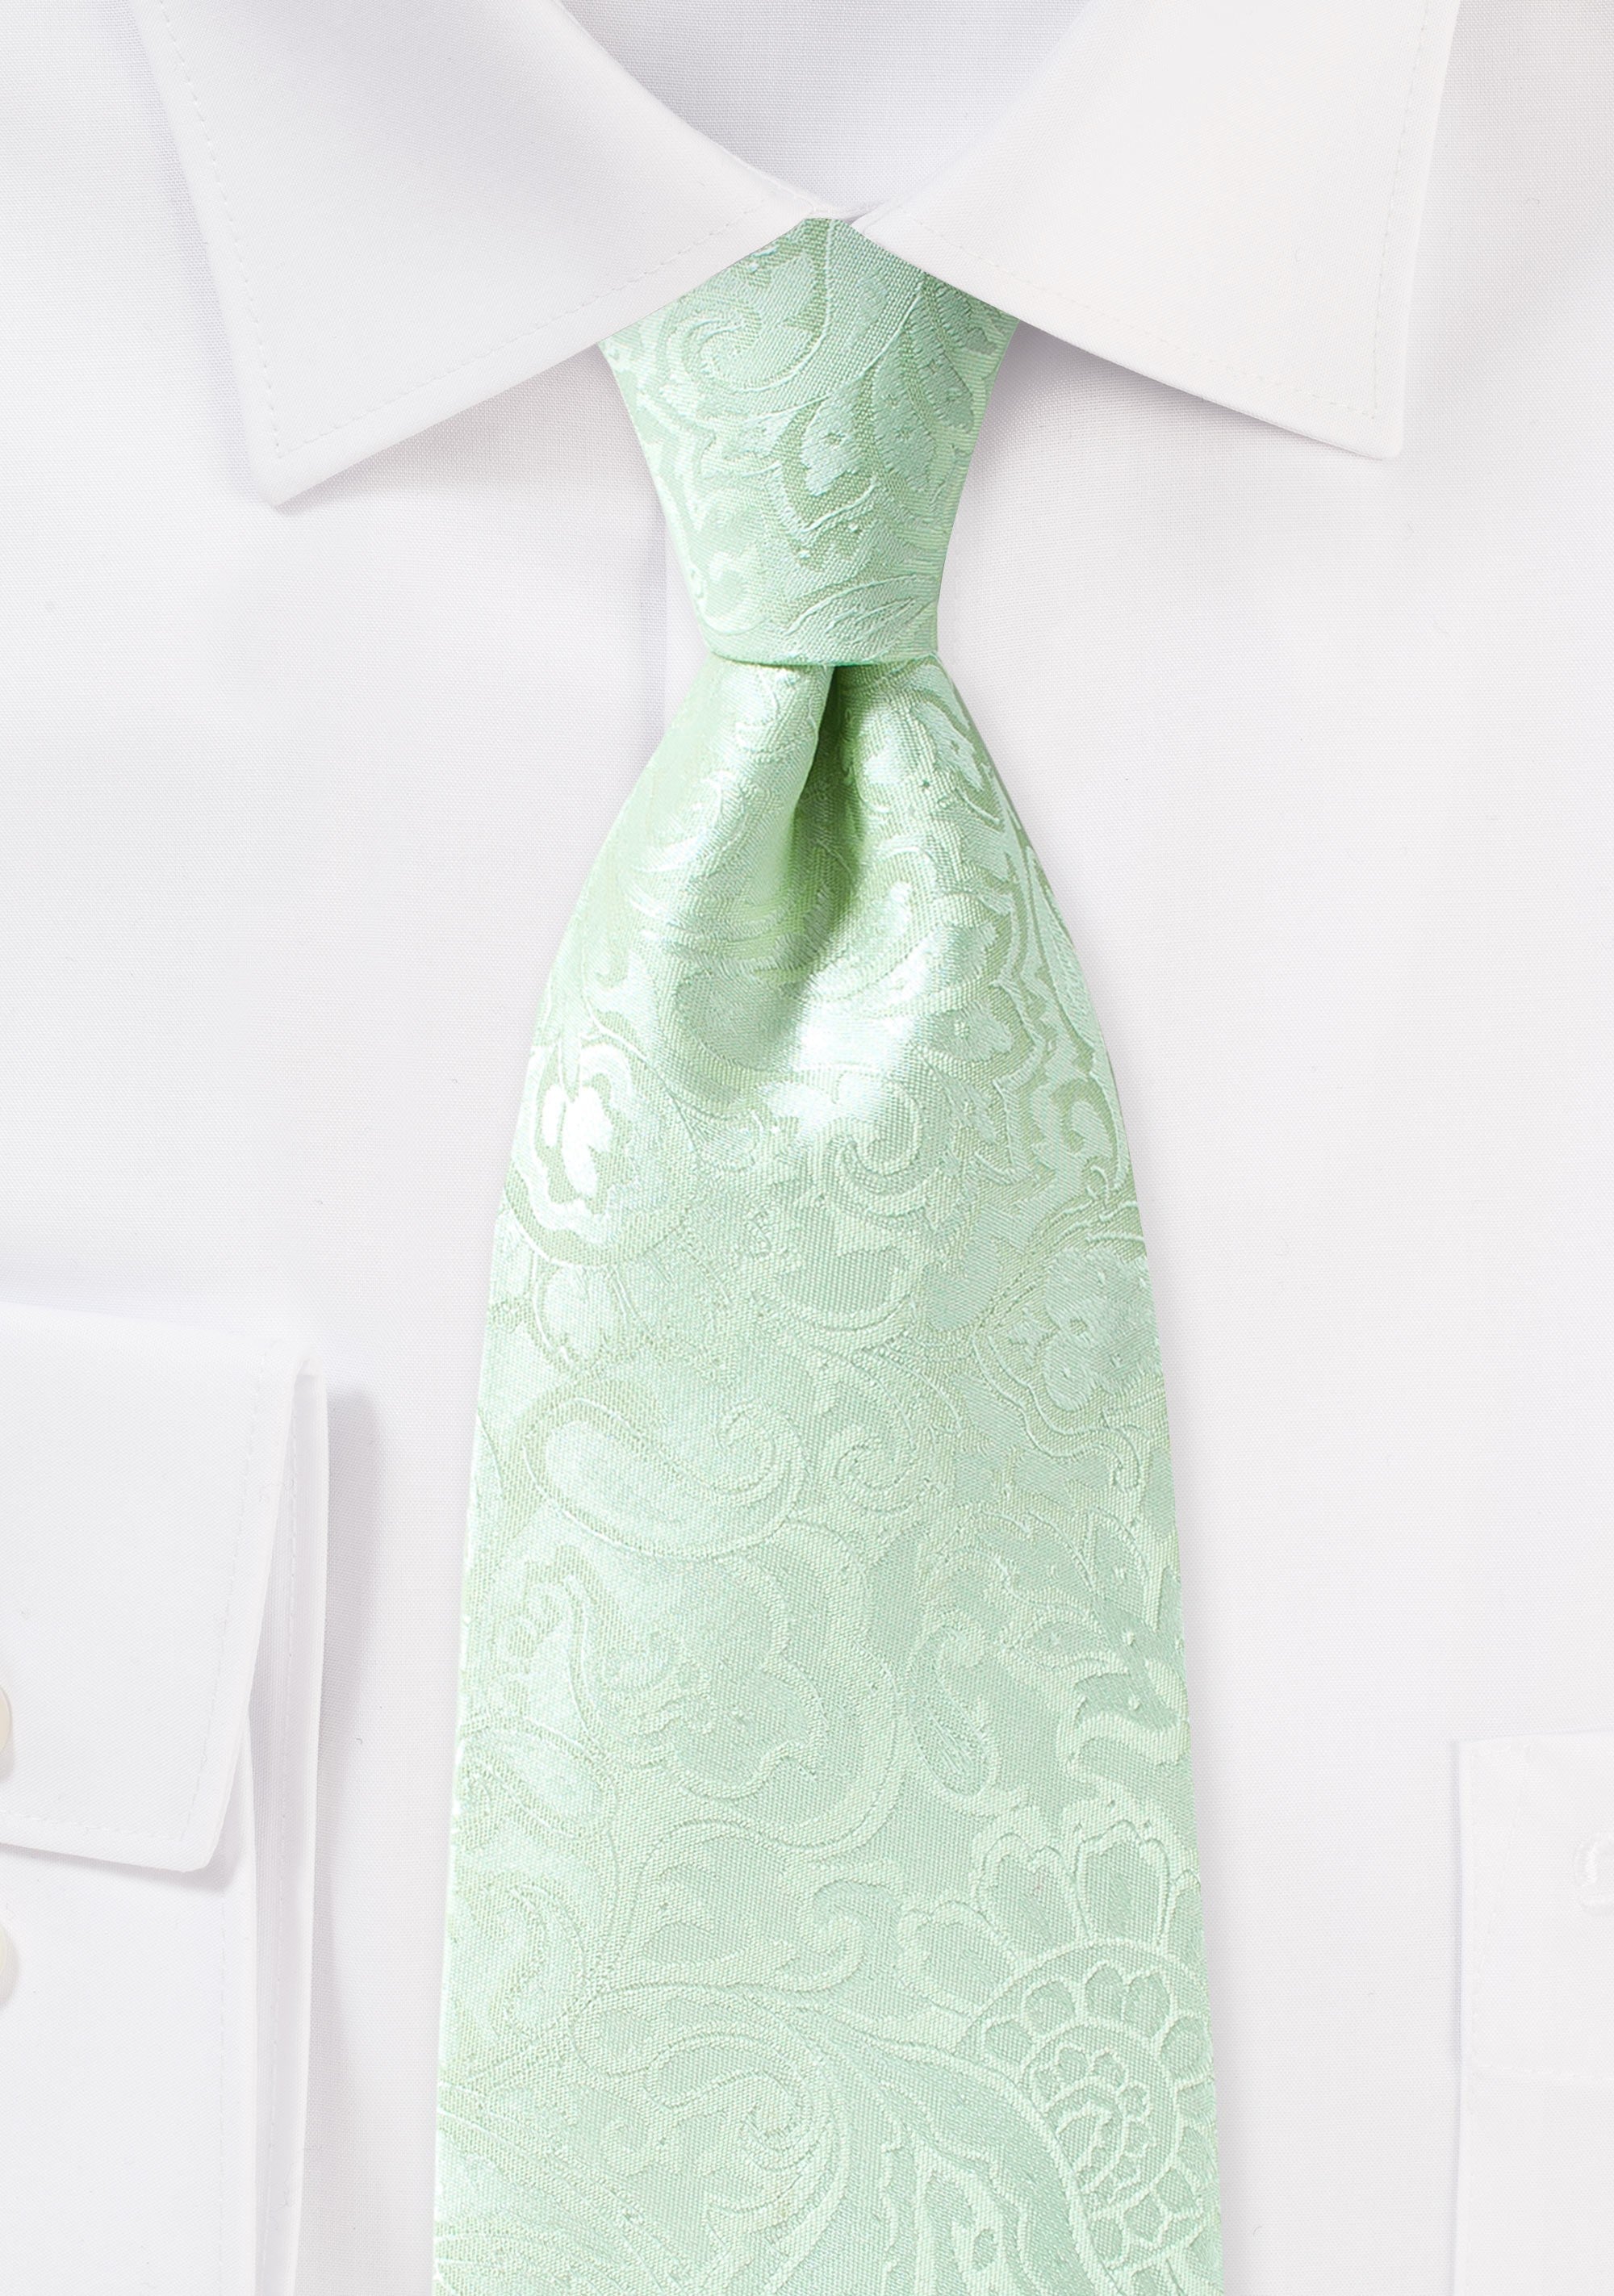 Winter Mint Floral Paisley Necktie